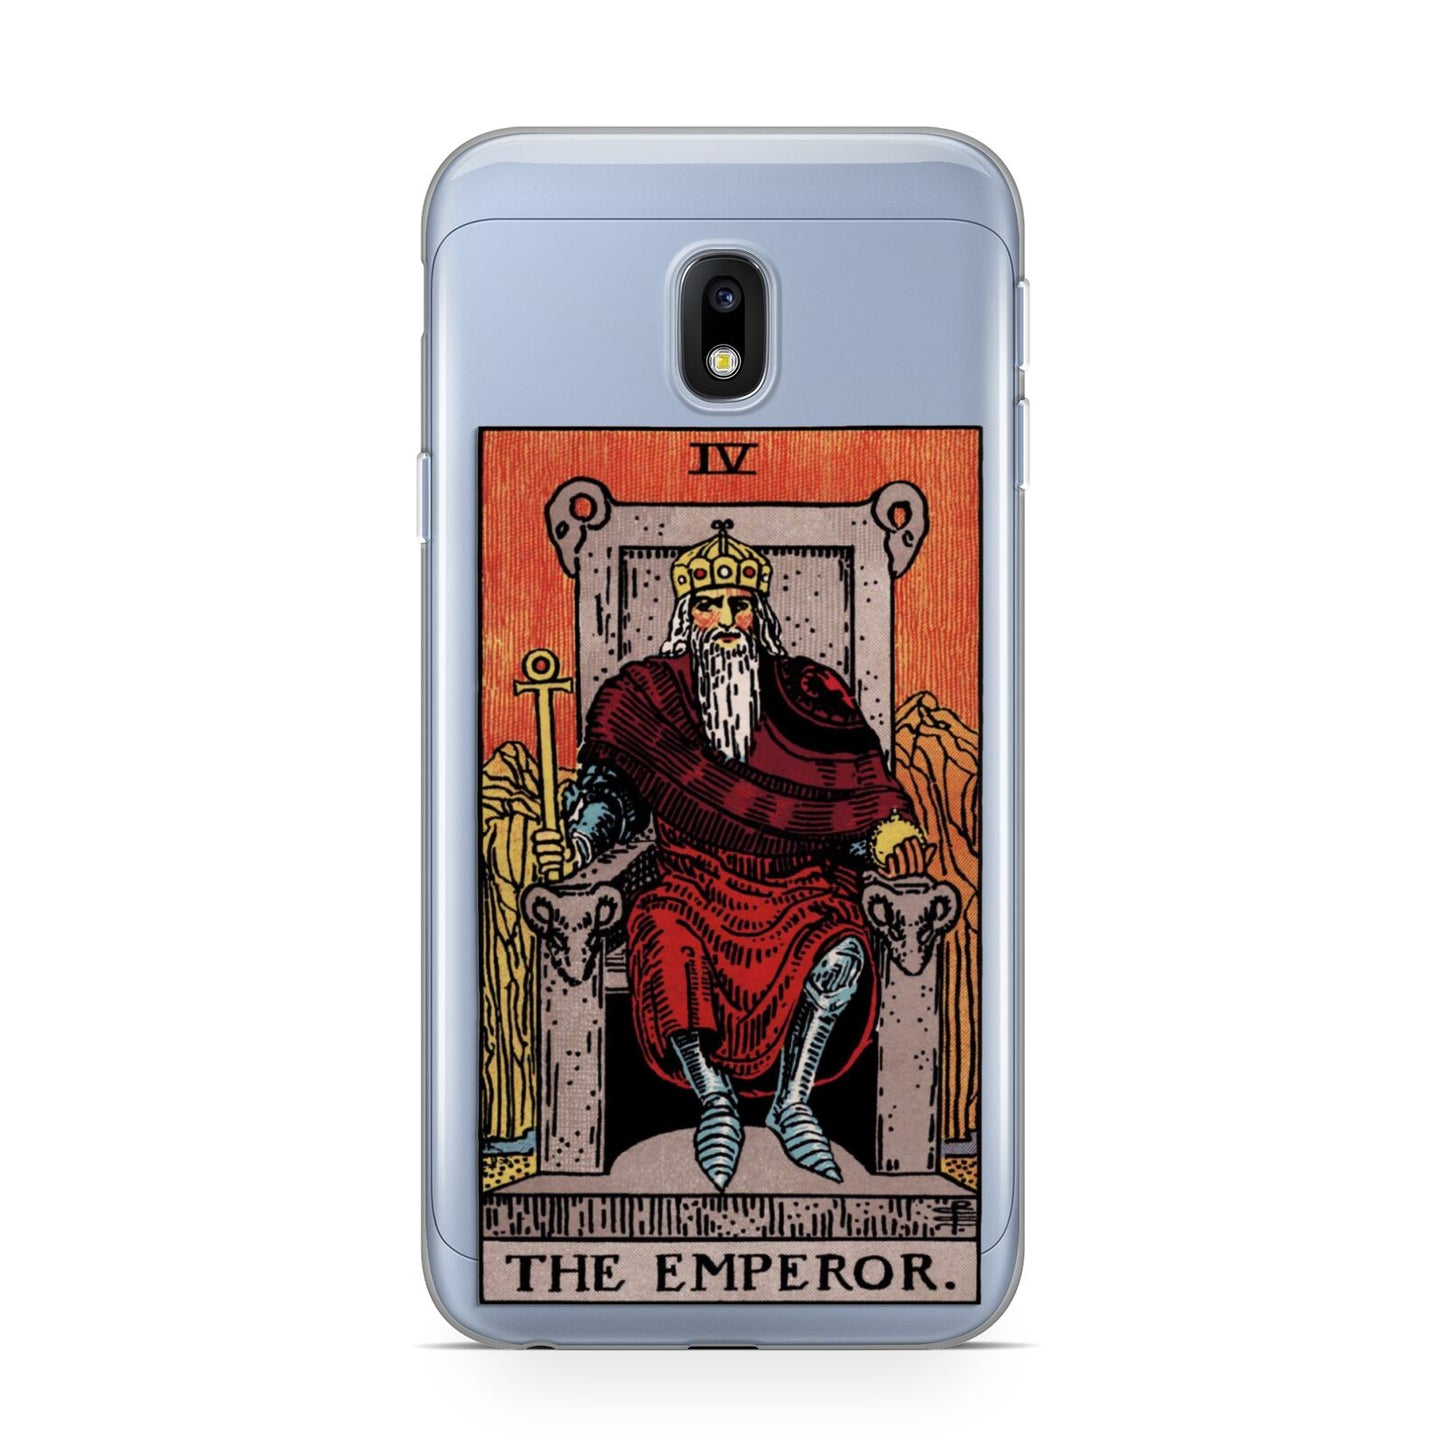 The Emperor Tarot Card Samsung Galaxy J3 2017 Case